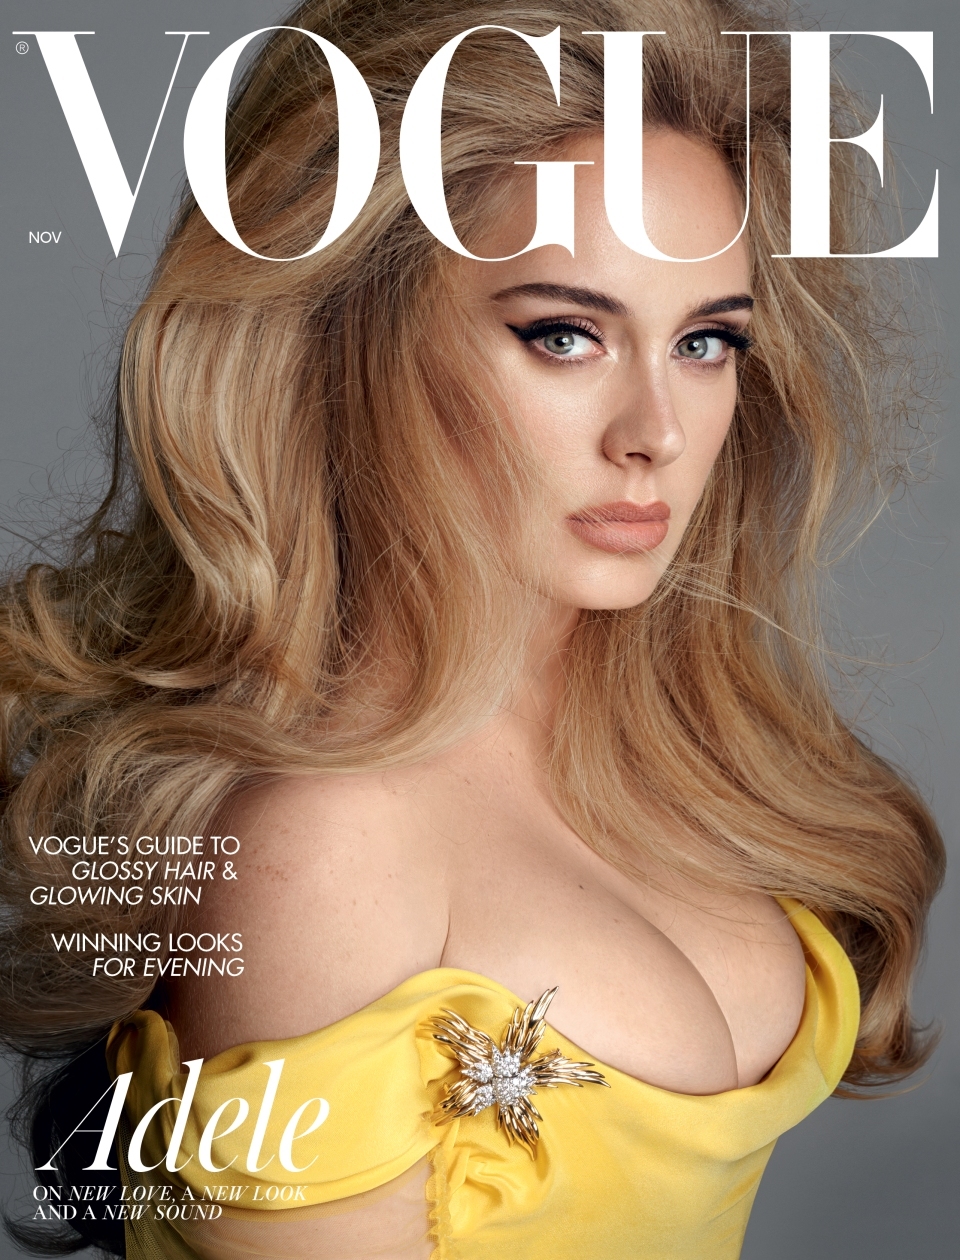 Adele, primele dezvăluiri despre divorț: Aș fi ajuns complet nefericită dacă nu mă puneam pe mine pe primul loc - Imaginea 9